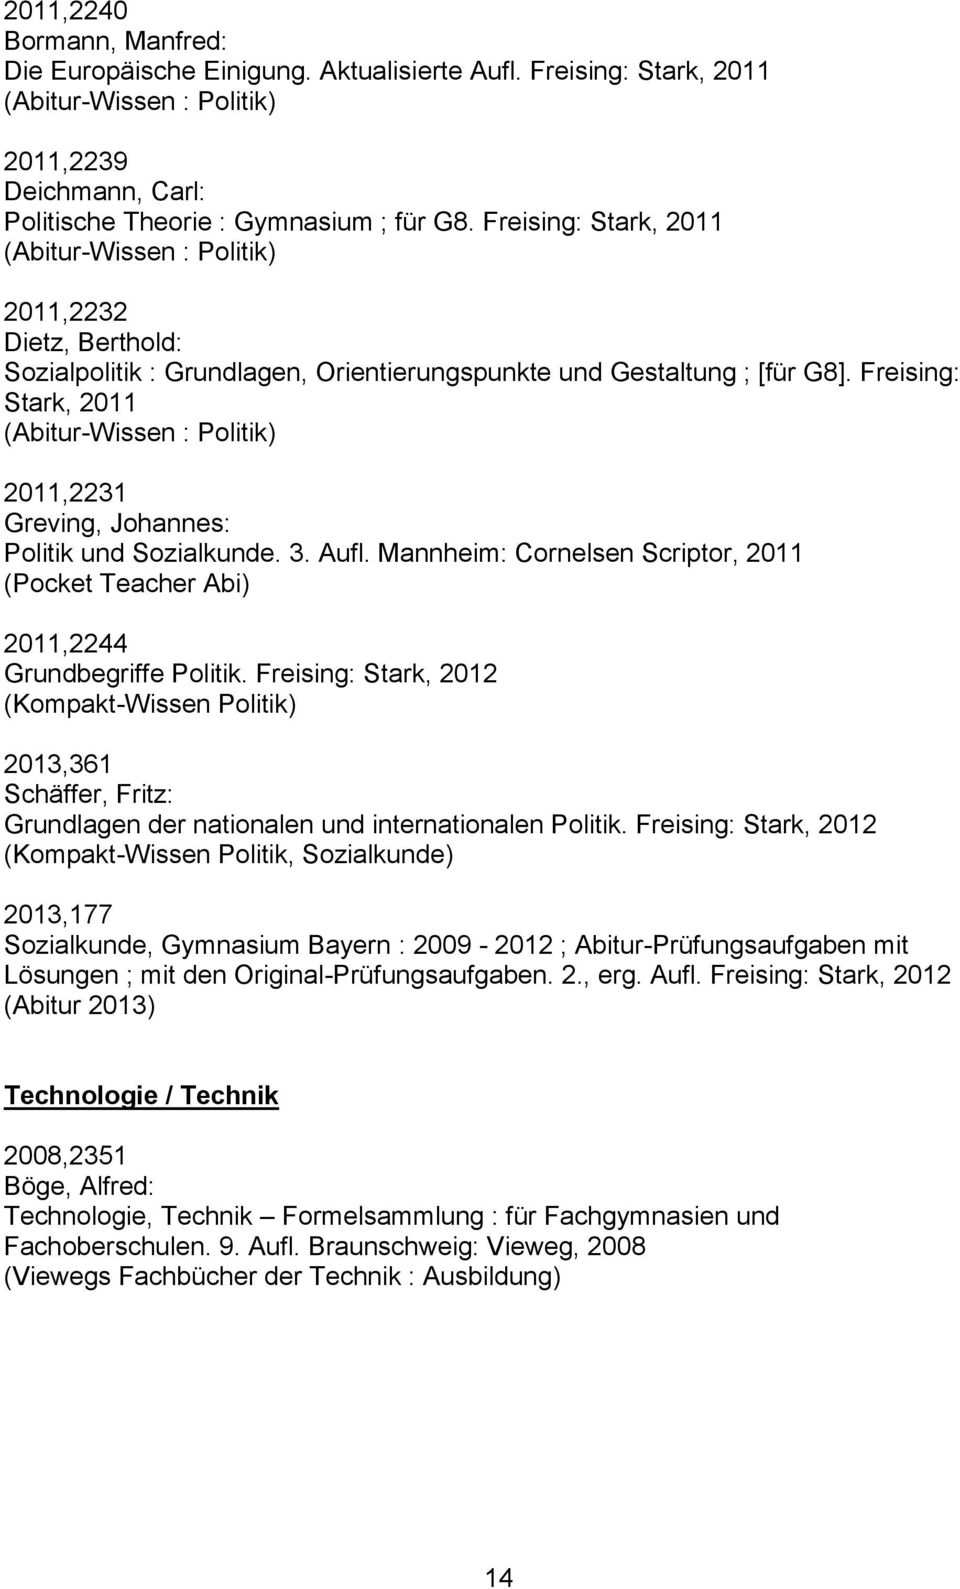 Freising: Stark, 2011 (Abitur-Wissen : Politik) 2011,2231 Greving, Johannes: Politik und Sozialkunde. 3. Aufl. Mannheim: Cornelsen Scriptor, 2011 (Pocket Teacher Abi) 2011,2244 Grundbegriffe Politik.